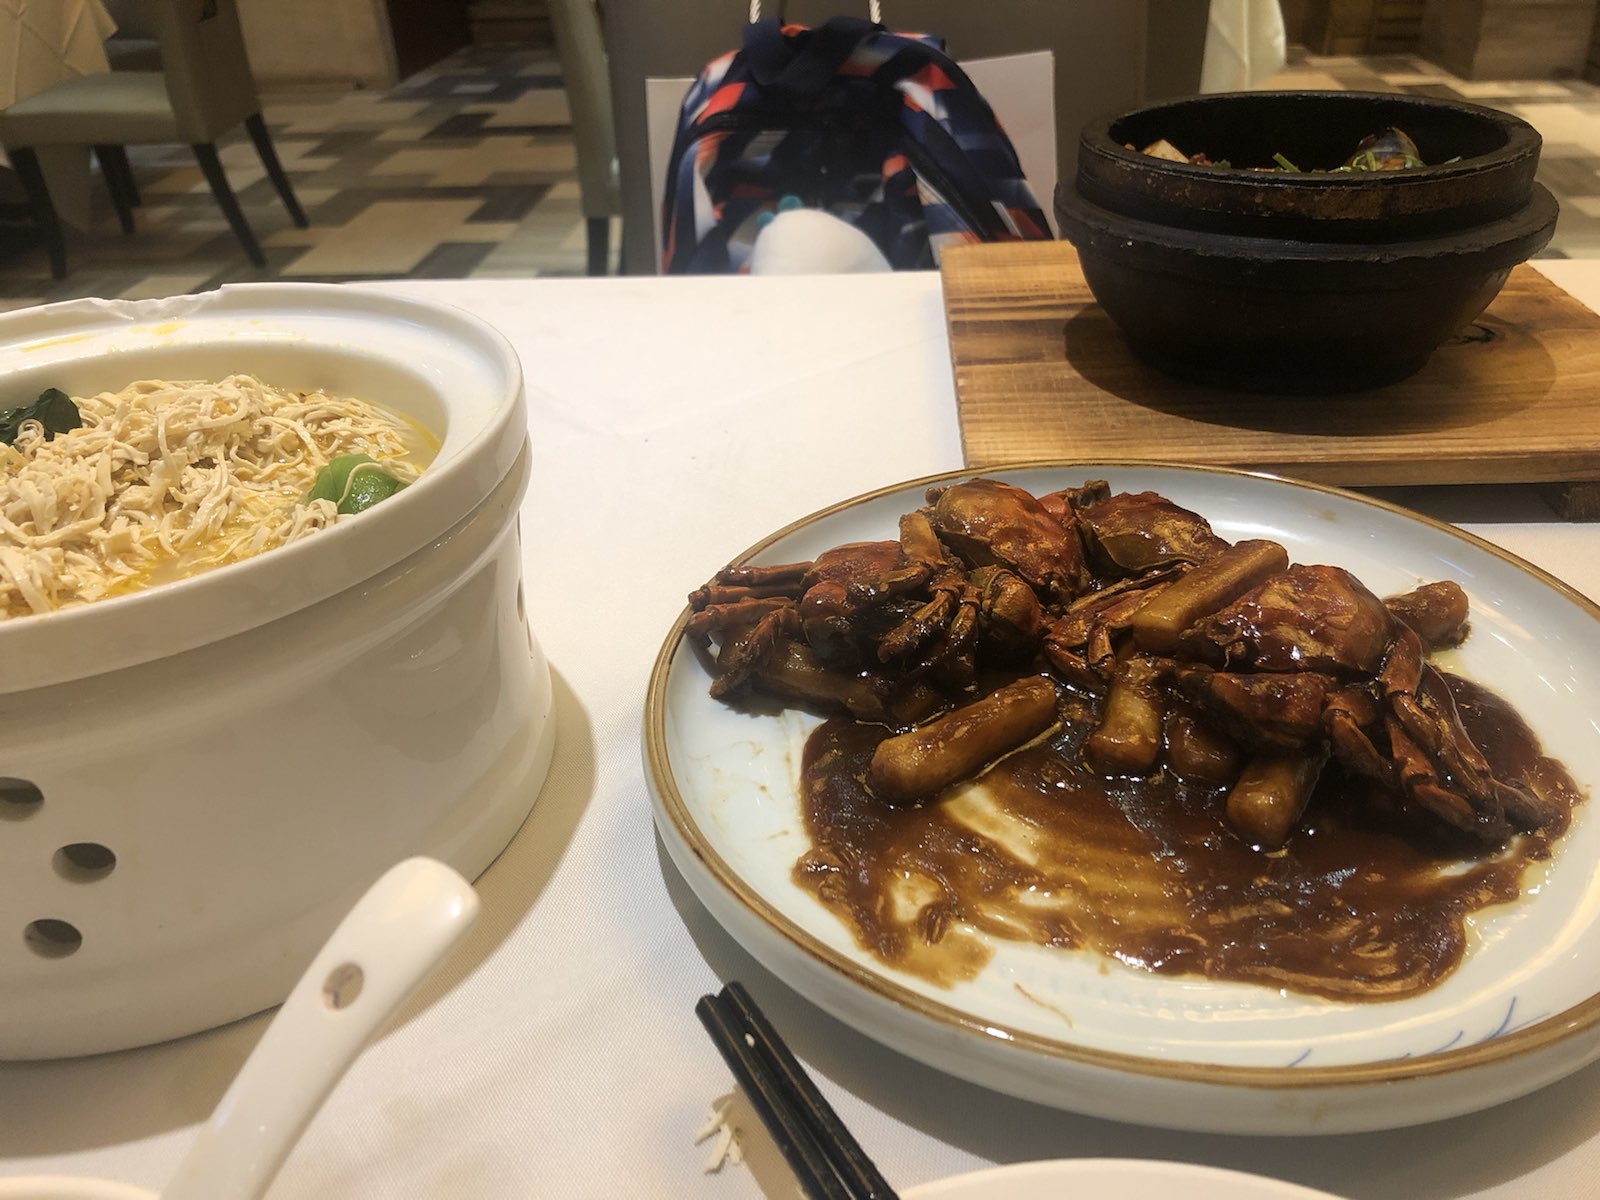 非常正宗的上海本帮菜馆，感觉味道是非常不错的，很喜欢。毛蟹炒年糕真的是